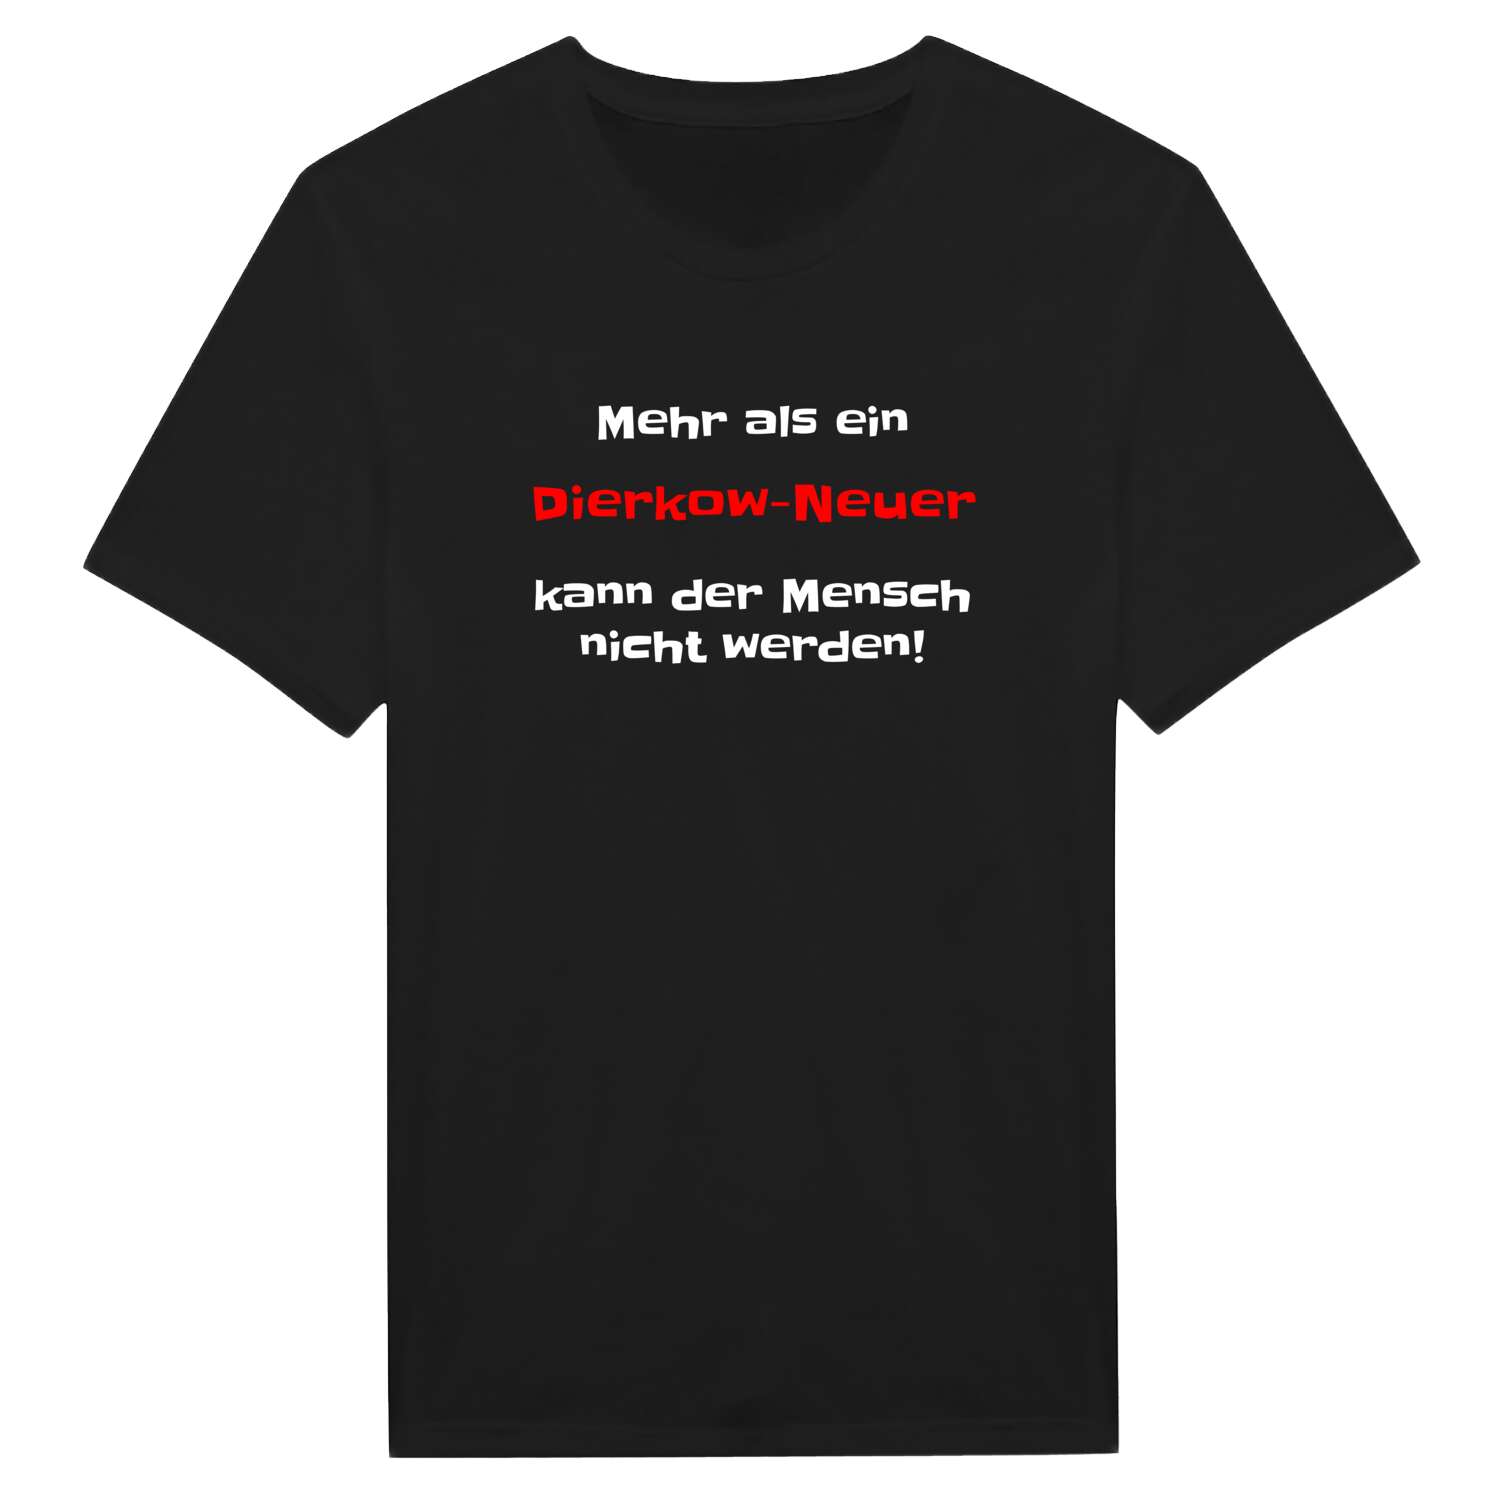 Dierkow-Neu T-Shirt »Mehr als ein«